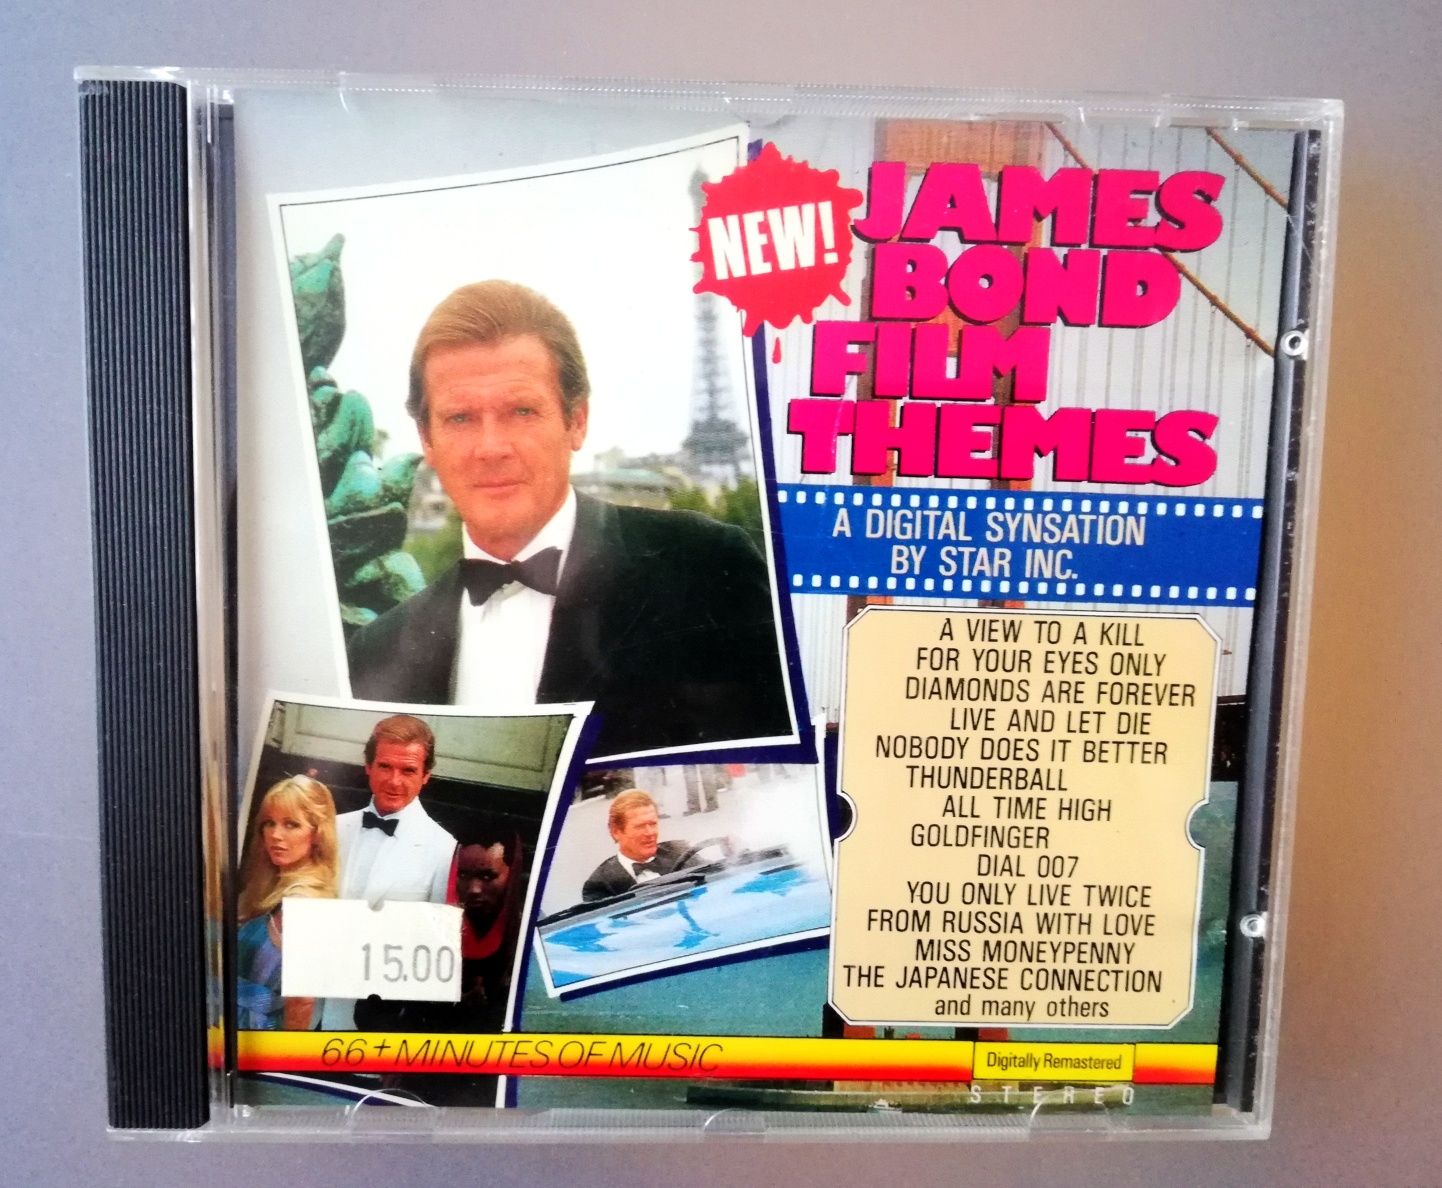 James Bond Film Themes płyta CD z muzyką filmową